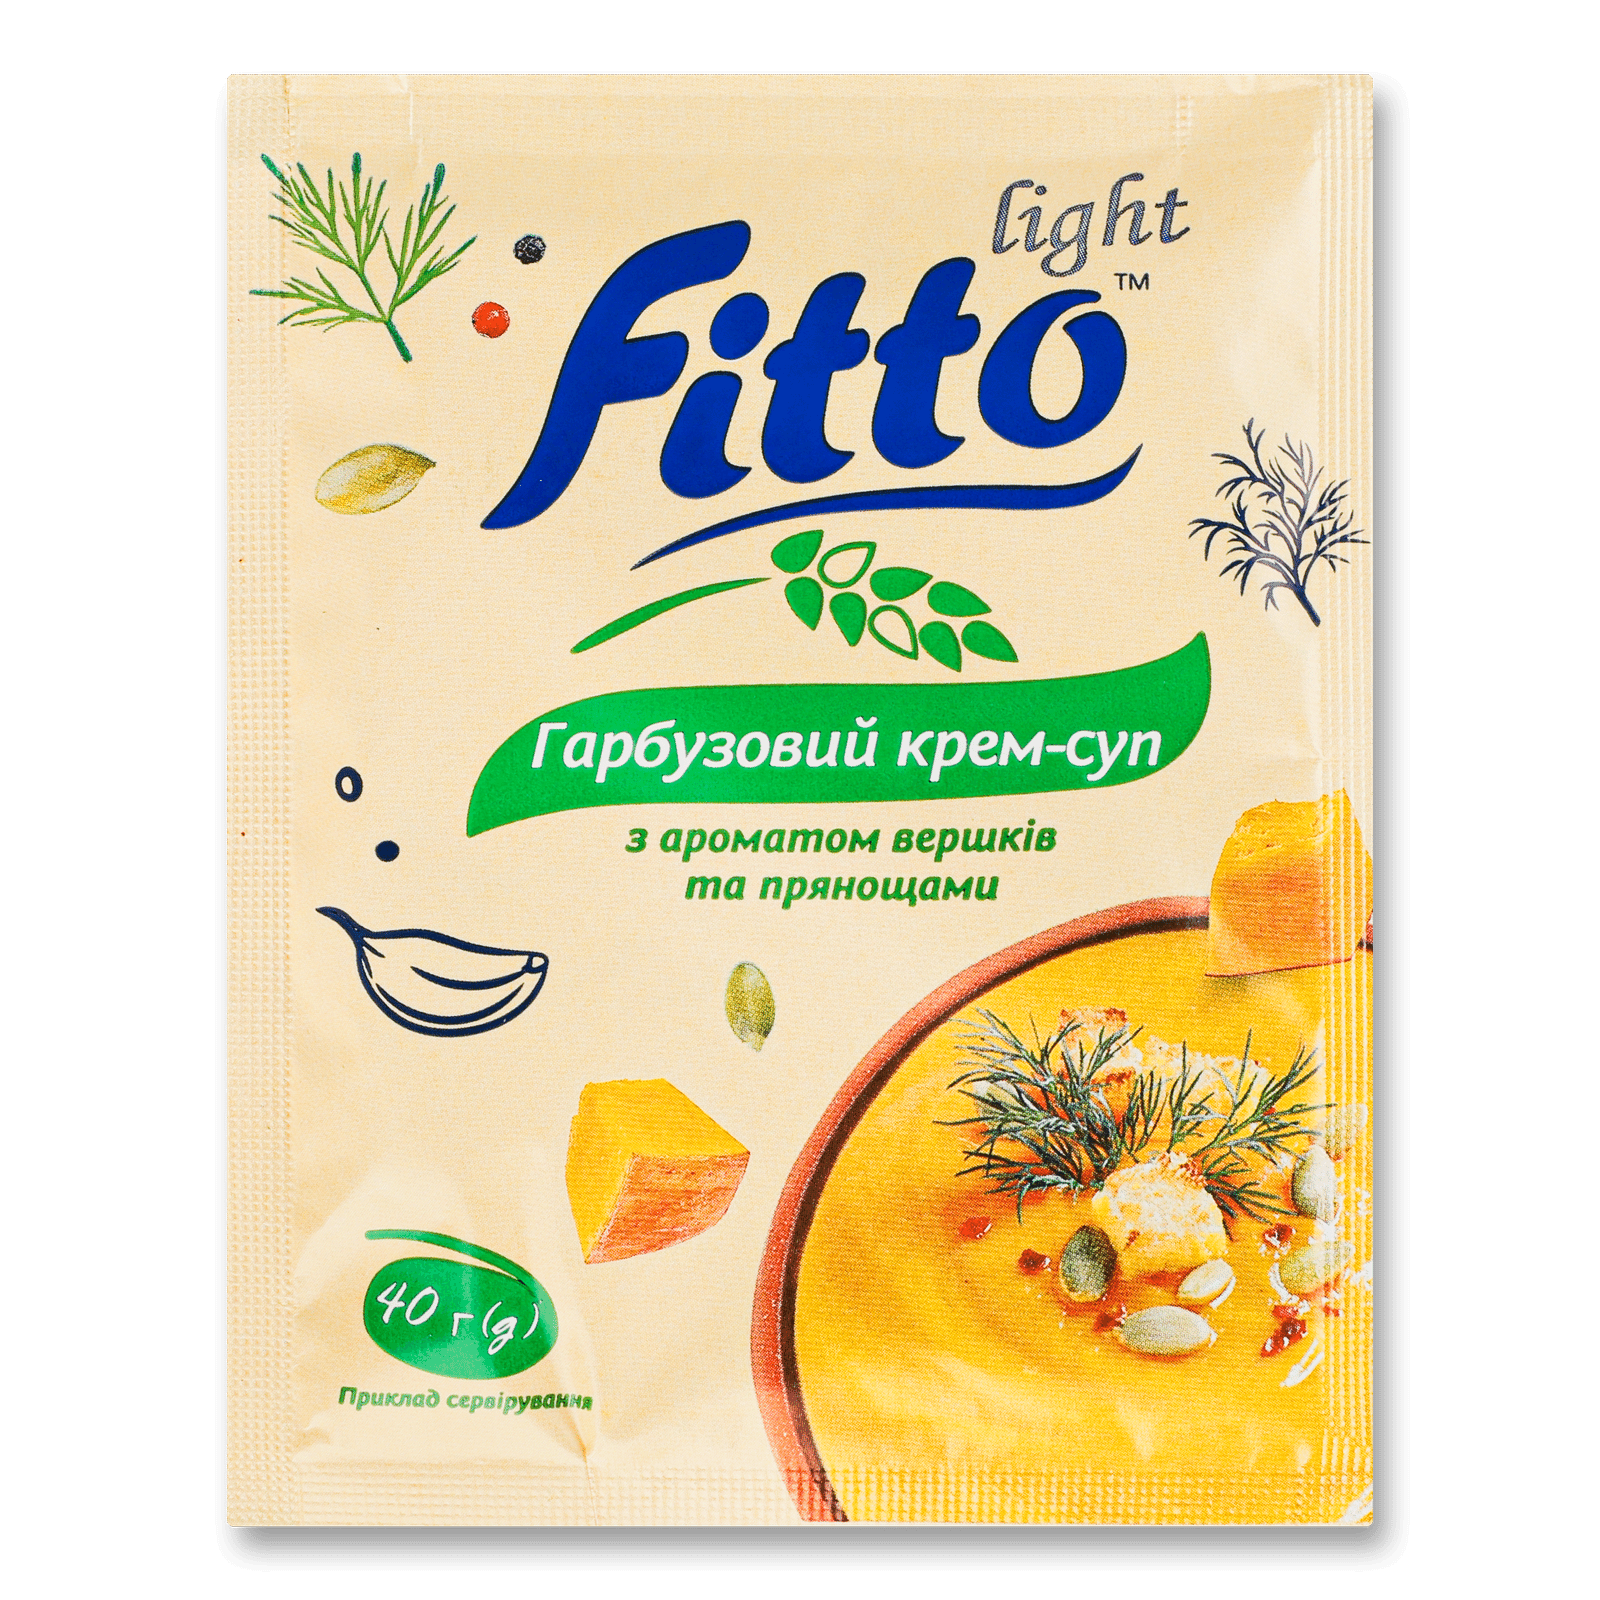 Крем-суп Fitto light гарбузовий - 1